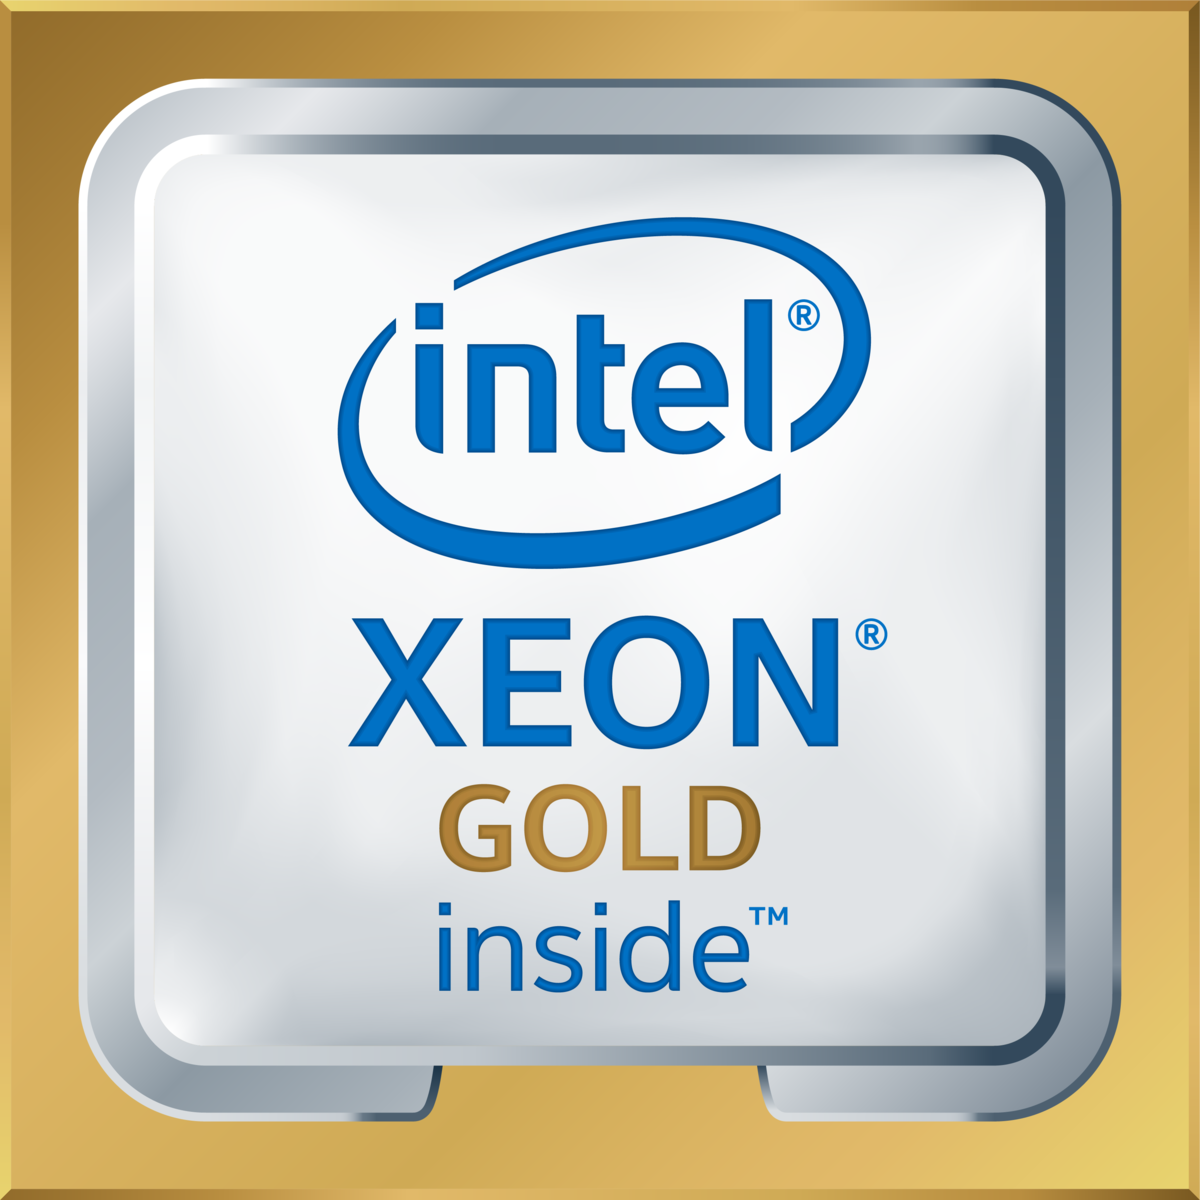 Intel(R) Xeon(R) Gold 6154 CPU @ 3.00GHz's logo